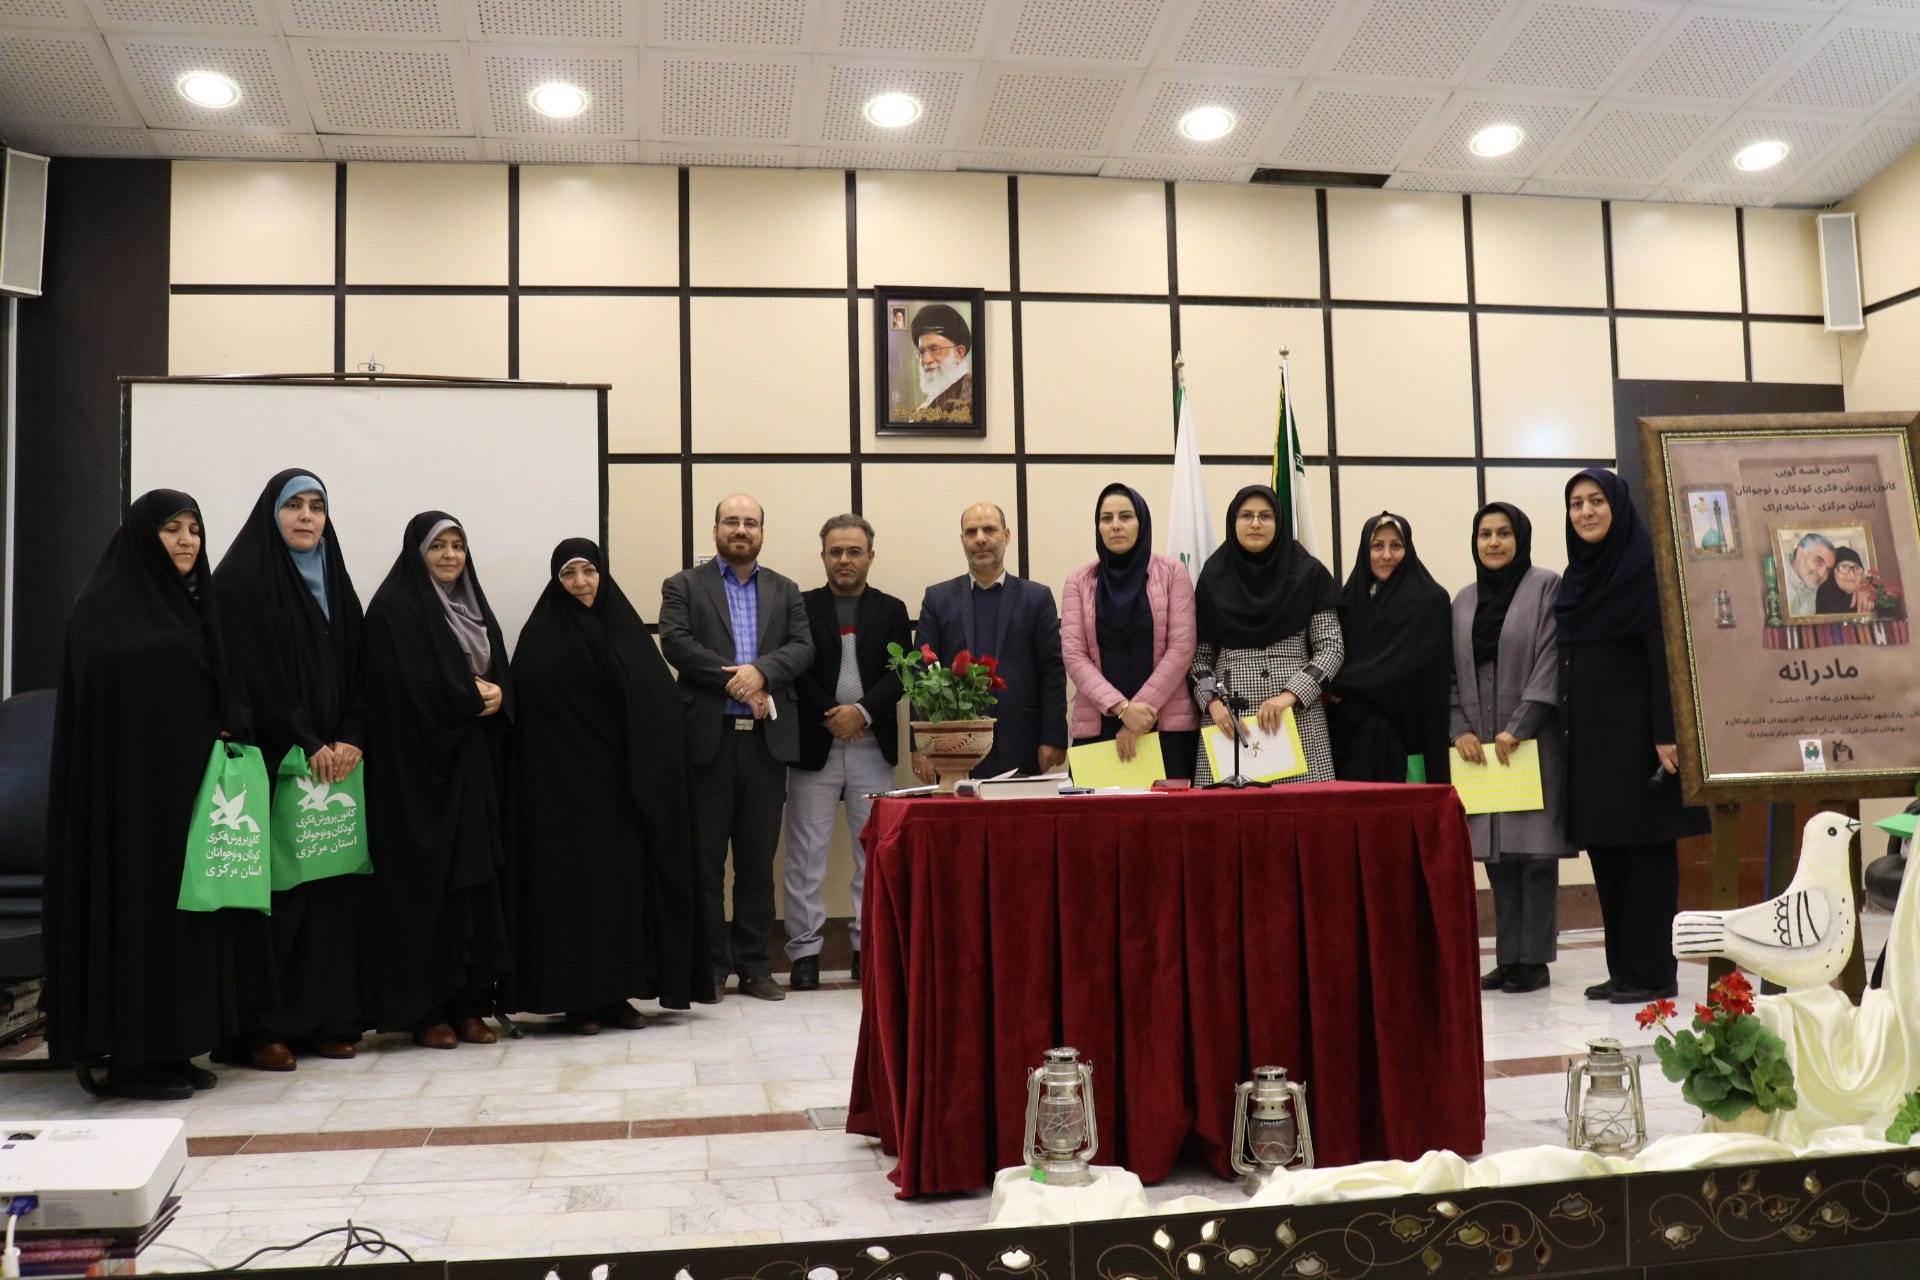 نشست انجمن قصه‌گویی شاخه اراک با موضوع "مادر و سردار سلیمانی"برگزار شد